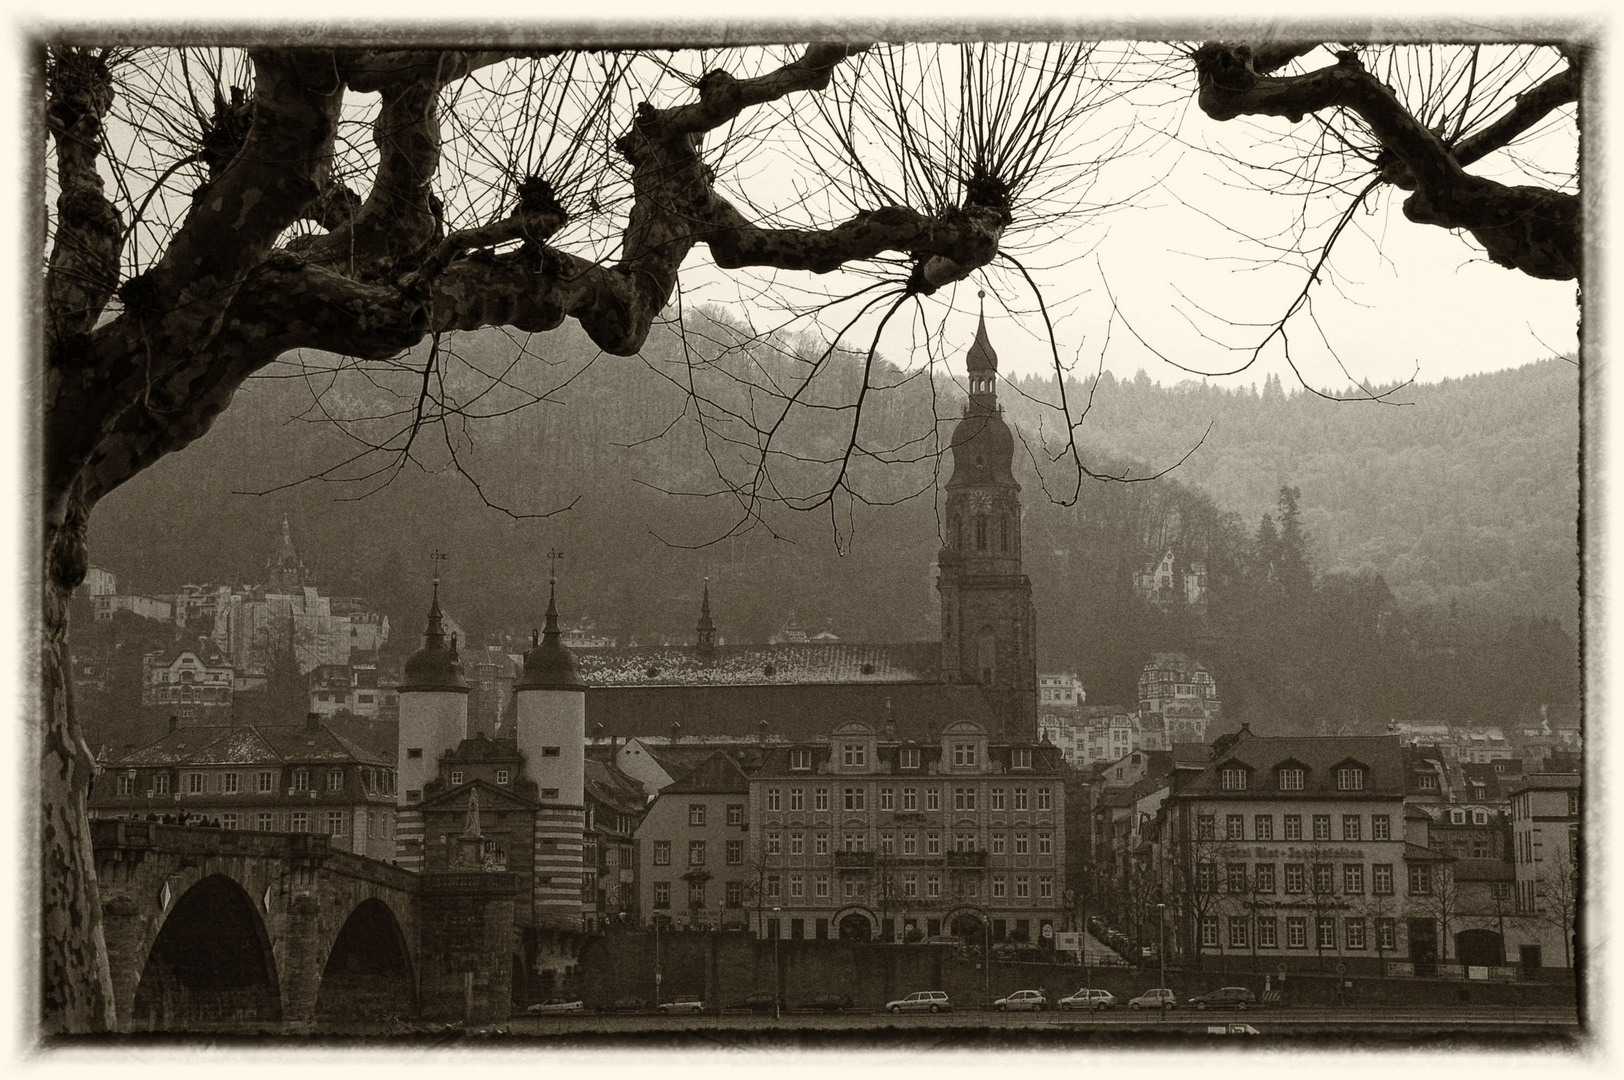 Mein Herz schlägt für Heidelberg...